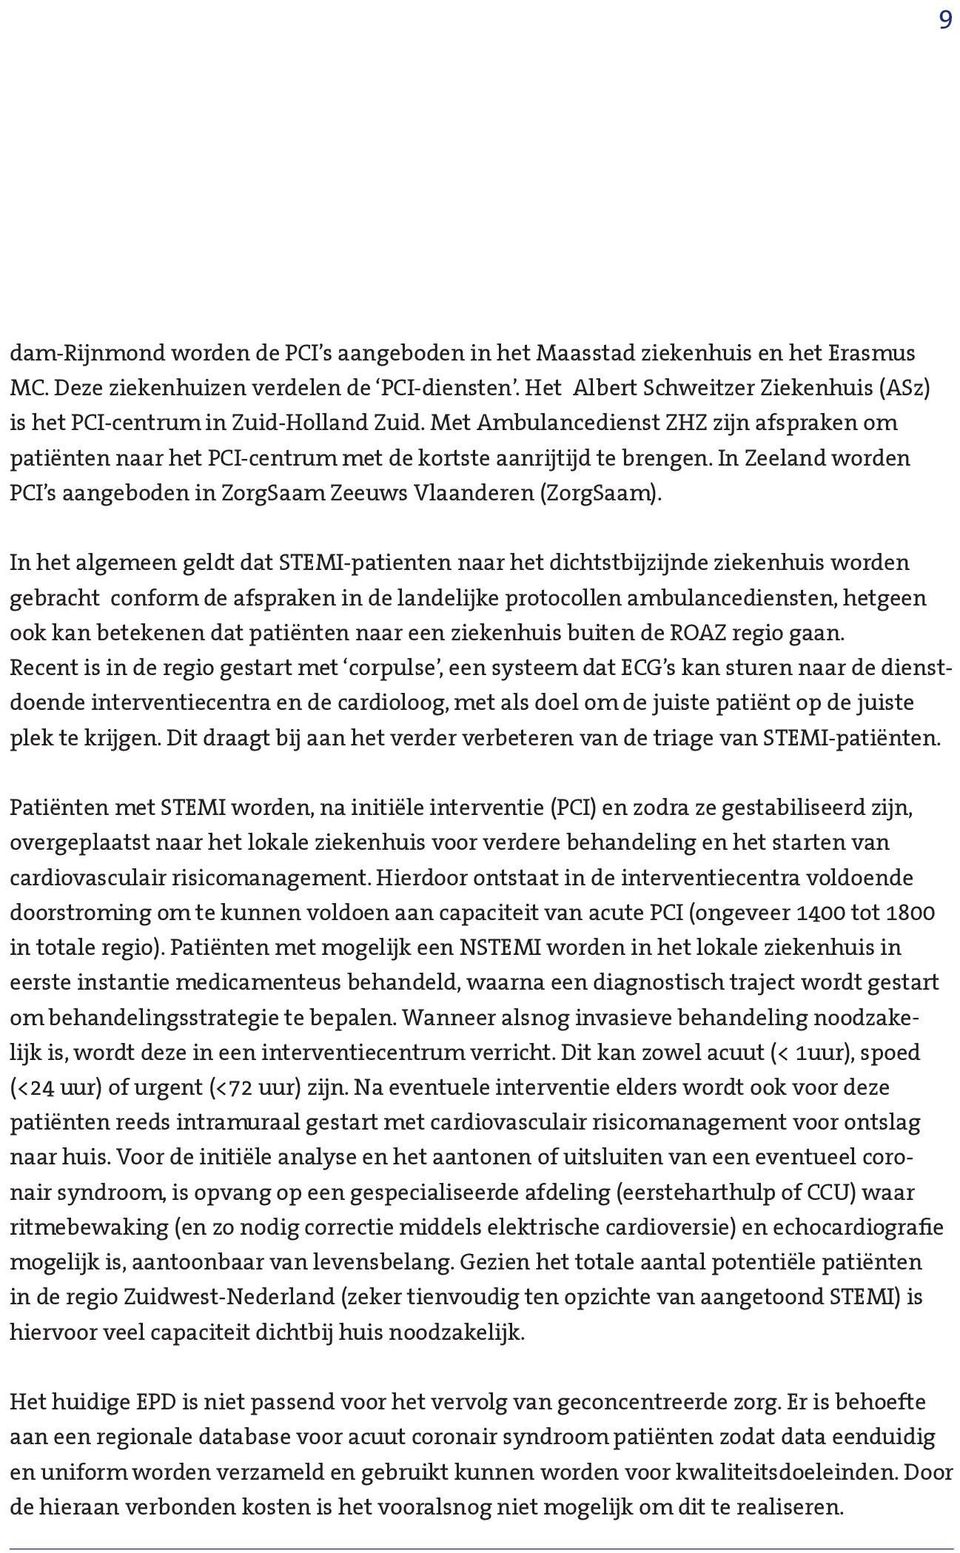 In Zeeland worden PCI s aangeboden in ZorgSaam Zeeuws Vlaanderen (ZorgSaam).